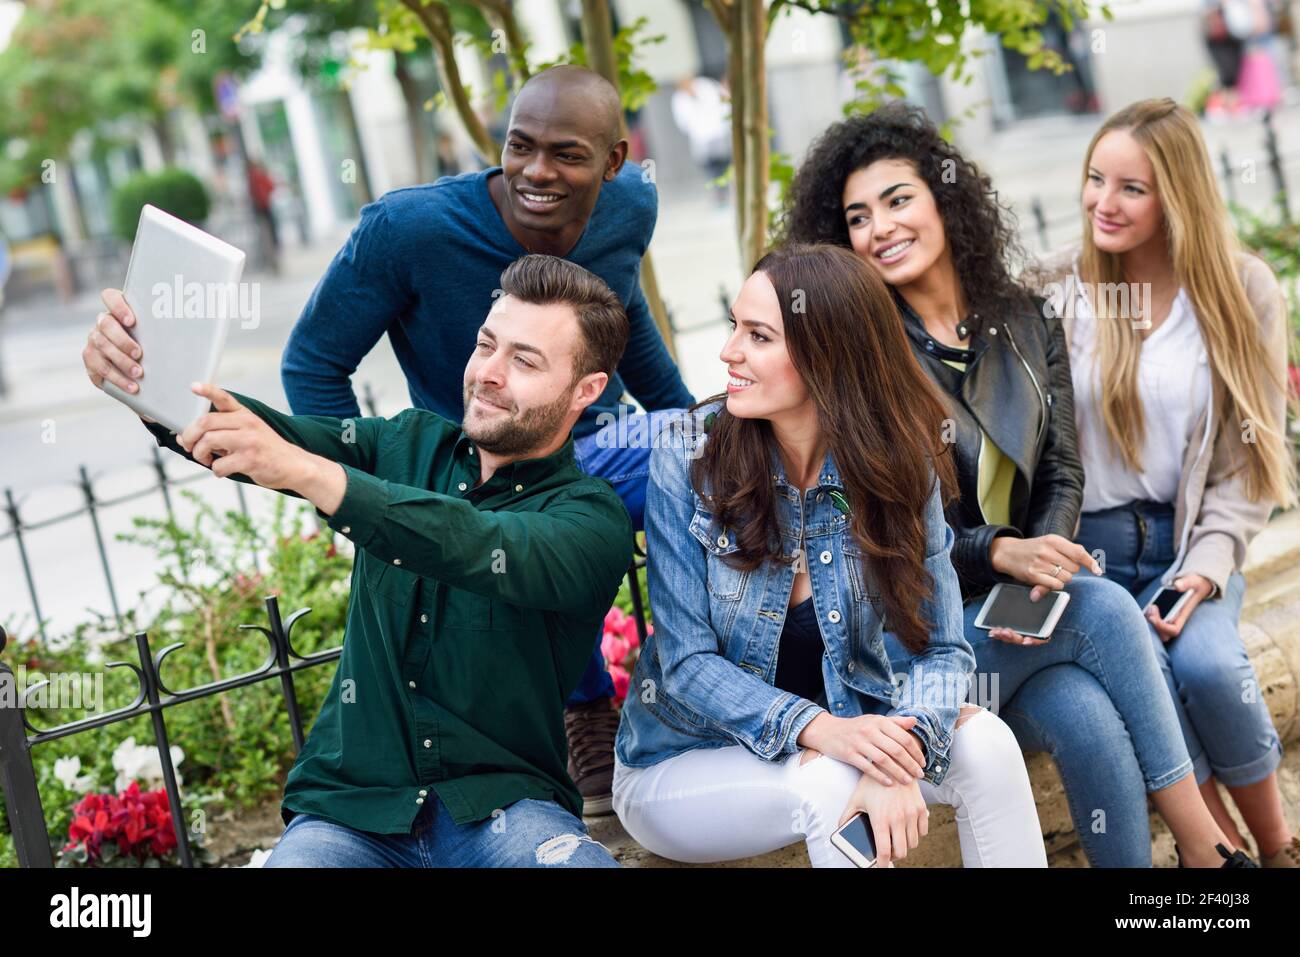 Multiethnische Gruppe junger Menschen, die gemeinsam im Freien Selfie fotografieren. Schöne lustige Frauen und Männer tragen lässige Kleidung im städtischen Hintergrund.. Multiethnische junge Menschen, die gemeinsam Selfie im urbanen Hintergrund machen Stockfoto